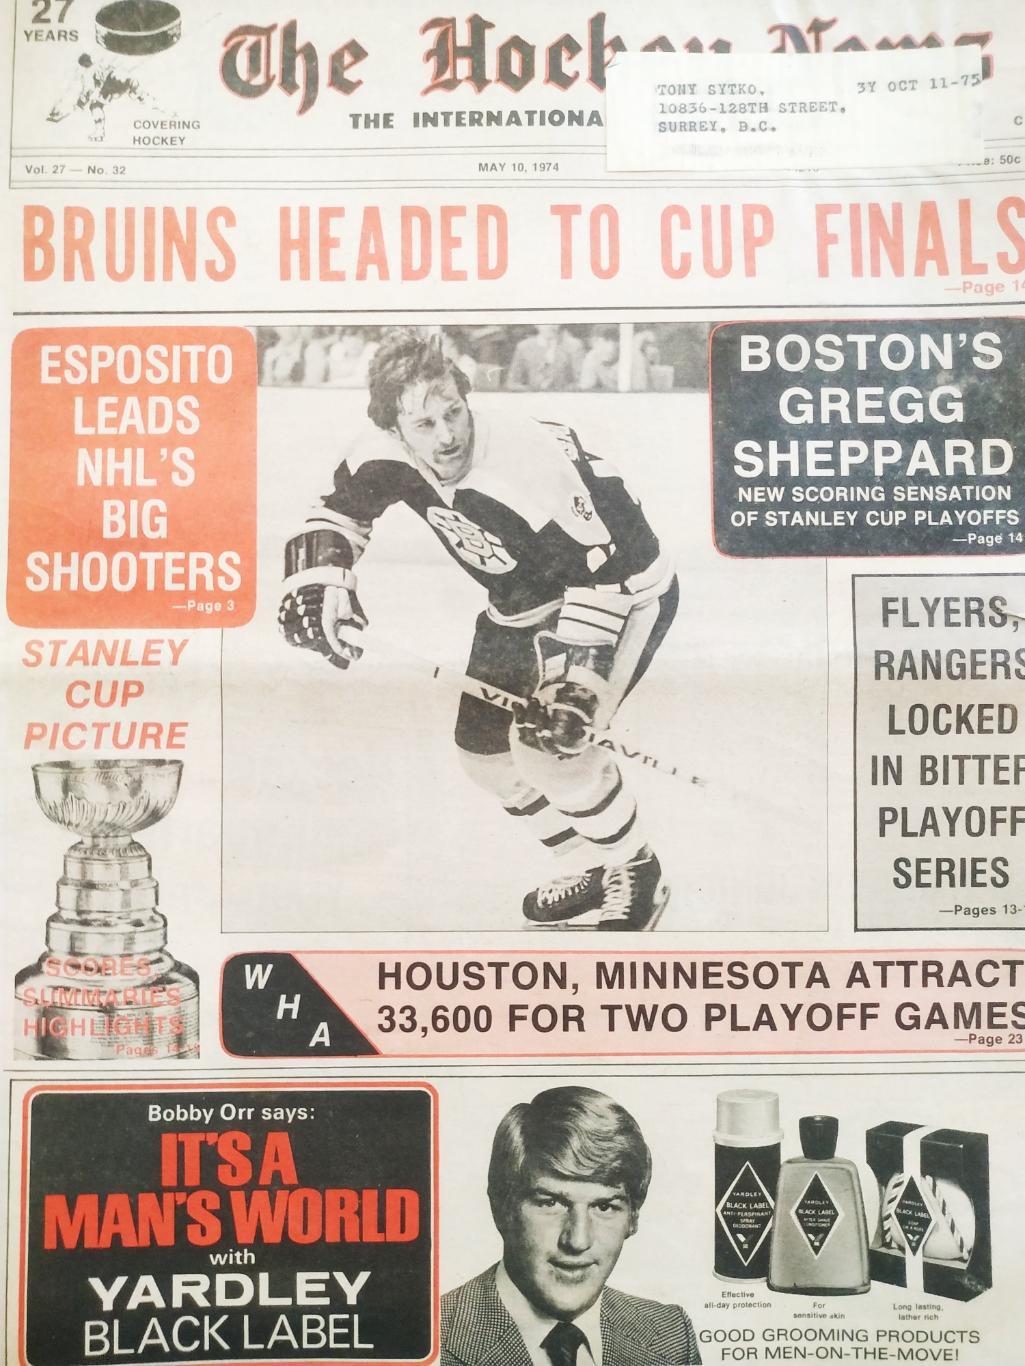 ХОККЕЙ ЖУРНАЛ ЕЖЕНЕДЕЛЬНИК НХЛ НОВОСТИ ХОККЕЯ MAY.10 1974 NHL THE HOCKEY NEWS